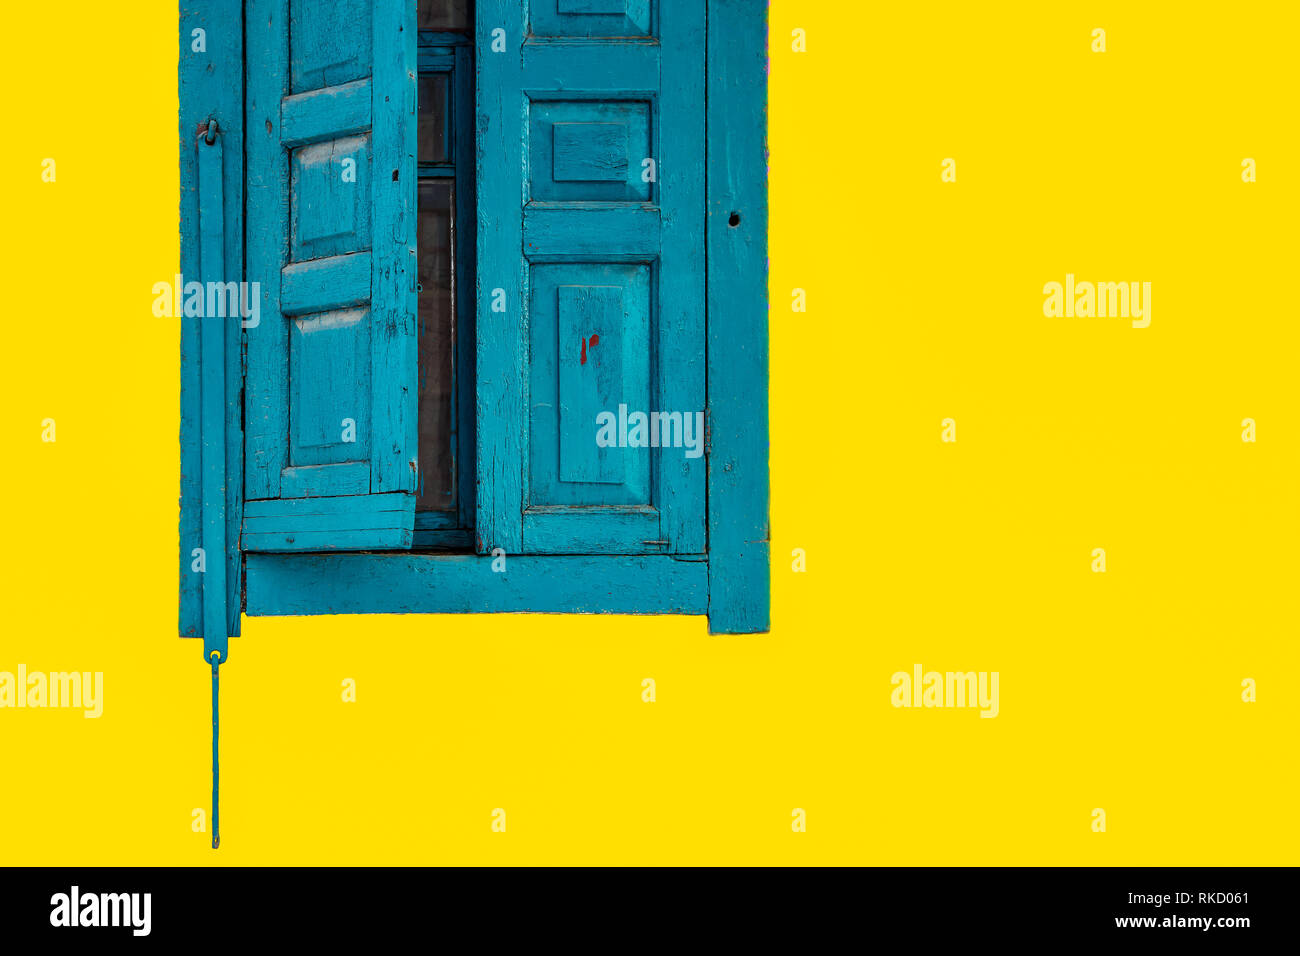 Les vieilles fenêtres, rideaux bleus sur fond jaune Banque D'Images